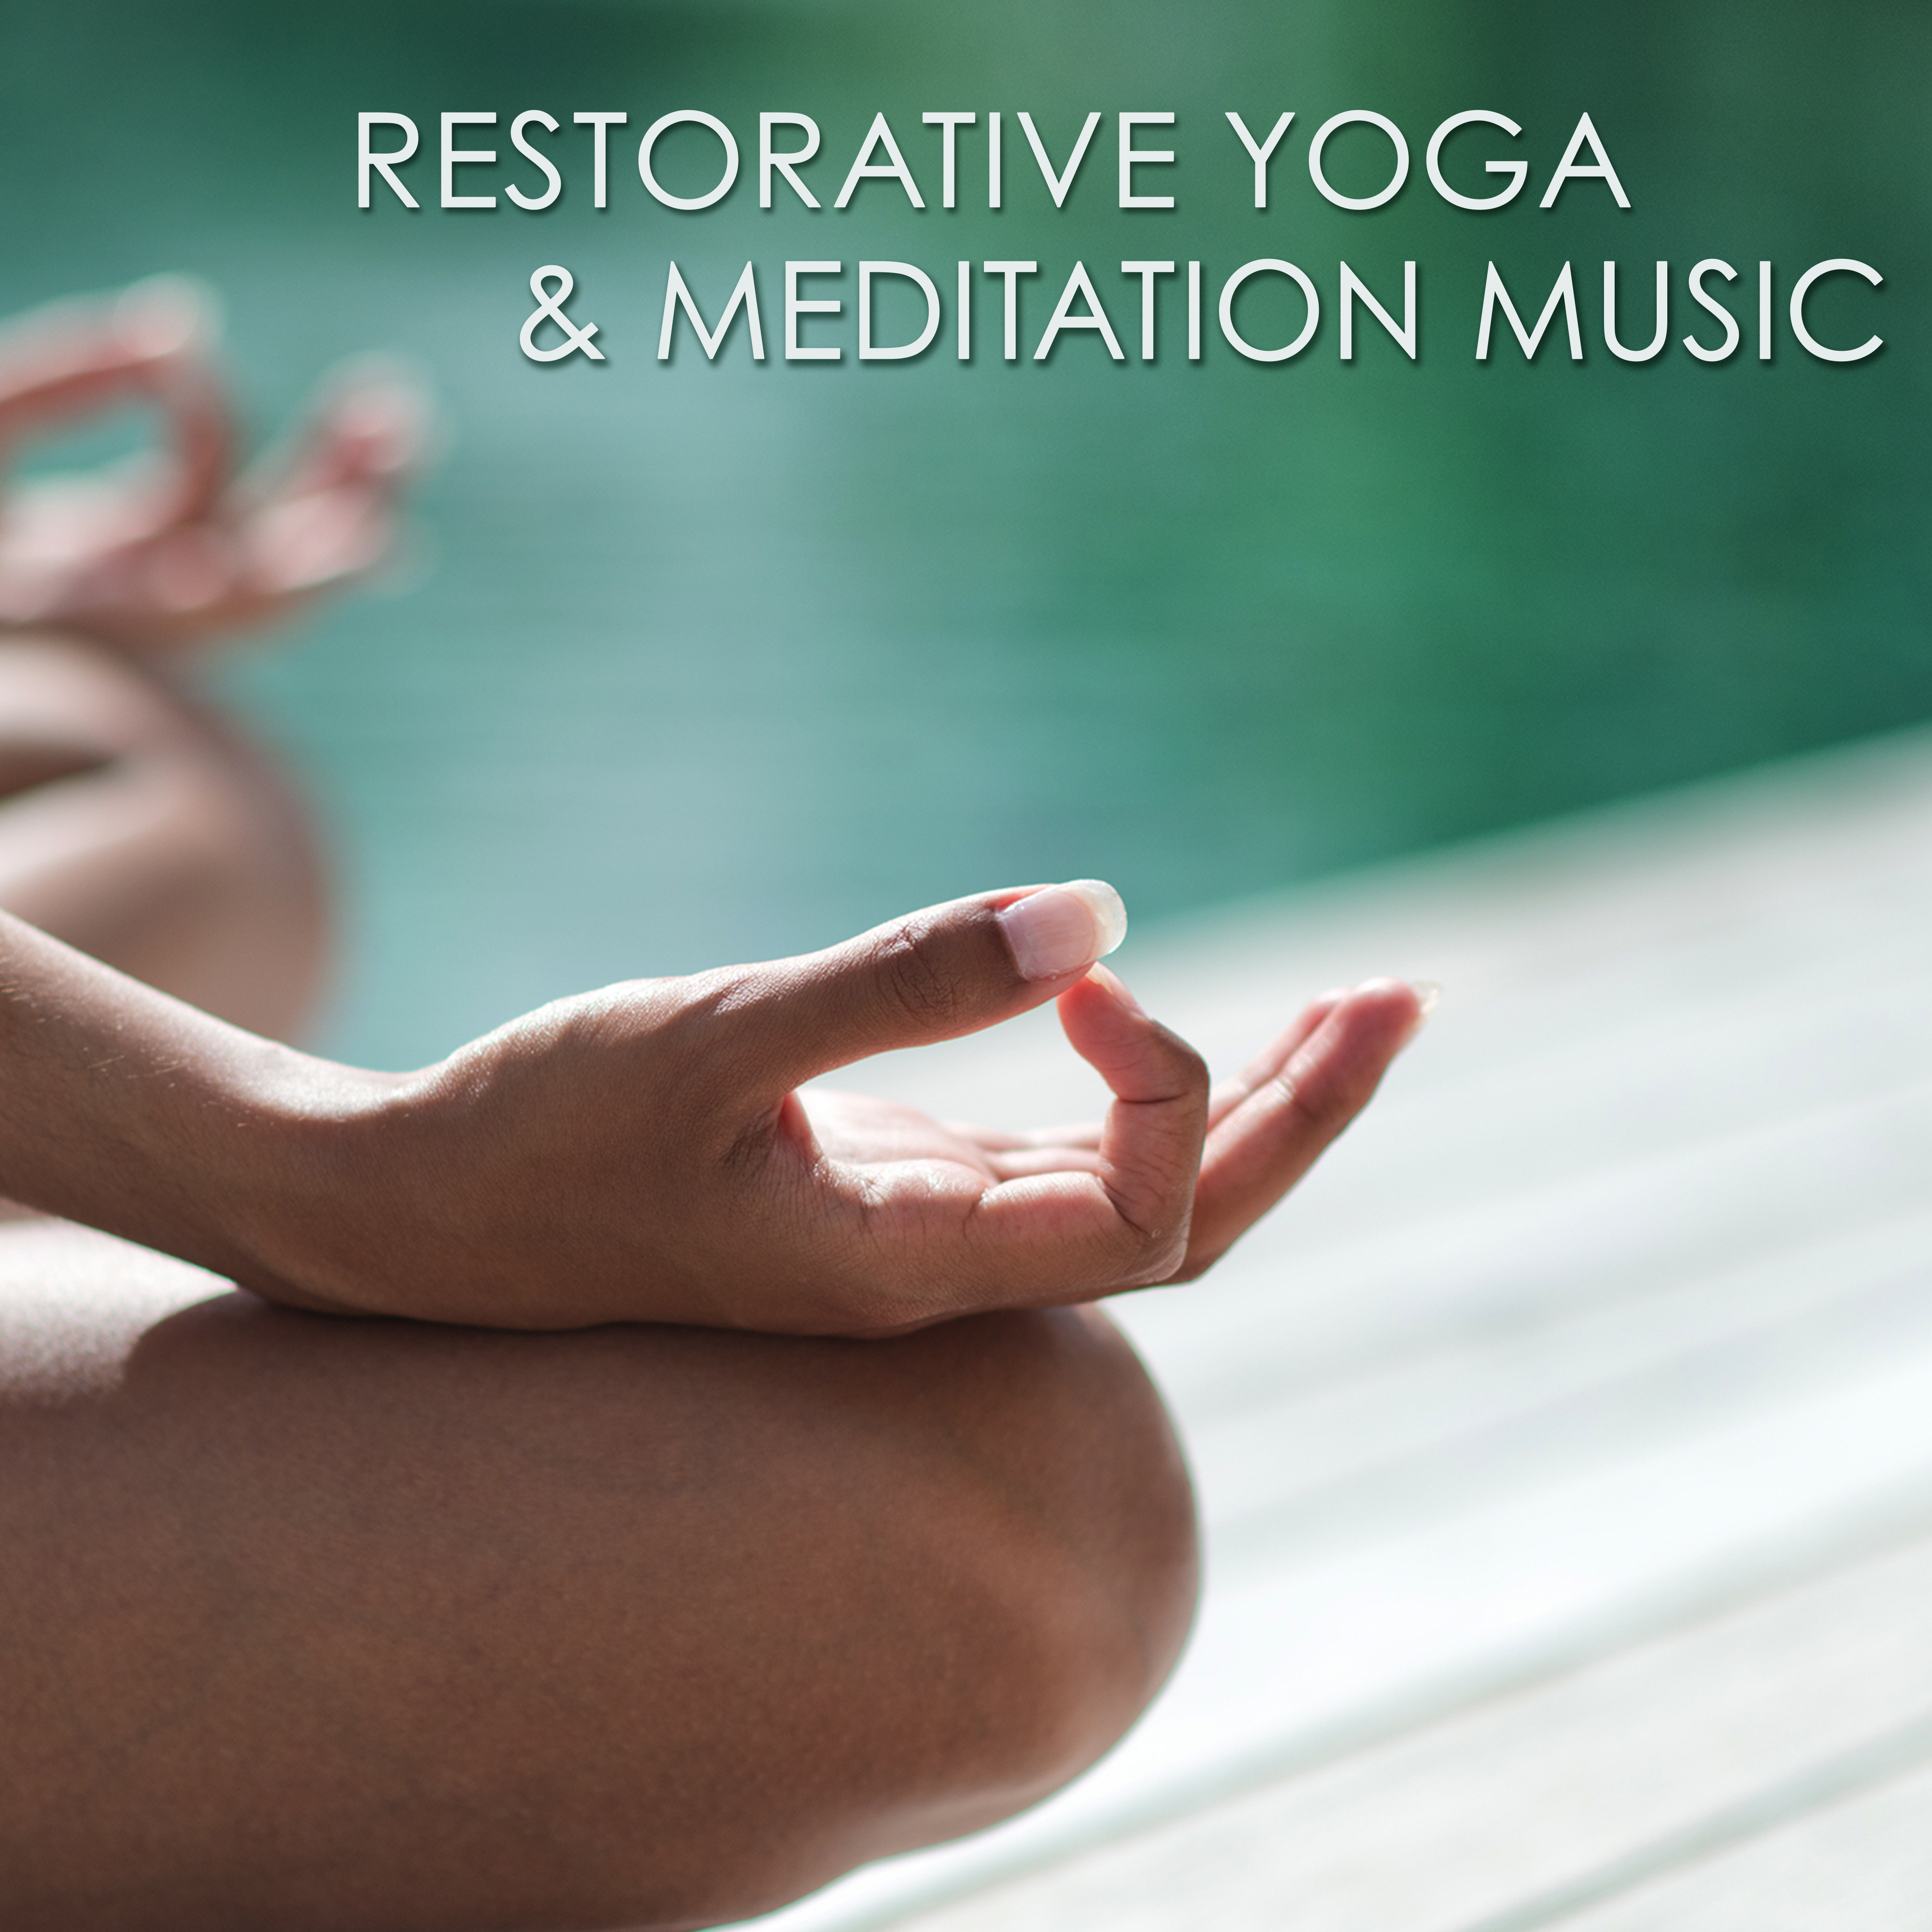 Restorative Yoga  Meditation Music  Amazing Peaceful Songs for Yoga Practice, Pranayama and Mindfulness Meditation